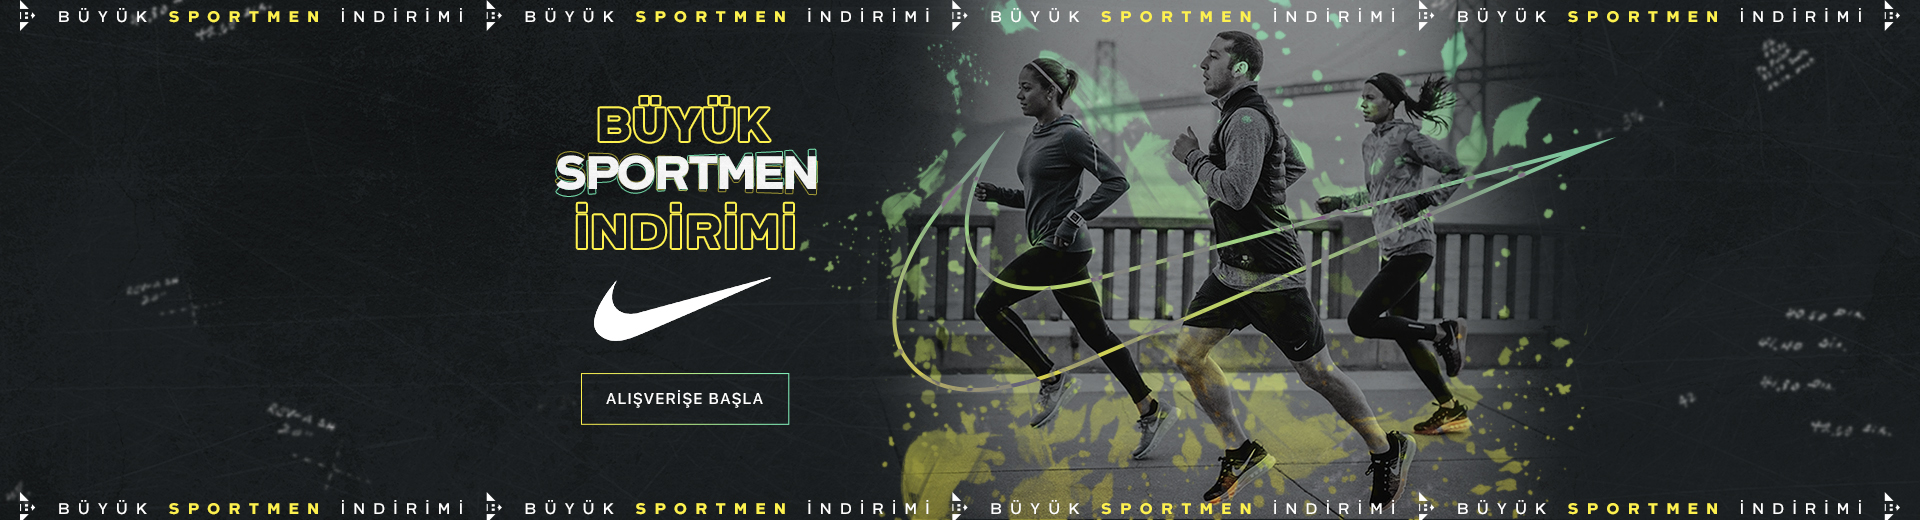 Büyük Sportmen İndirimi - Nike